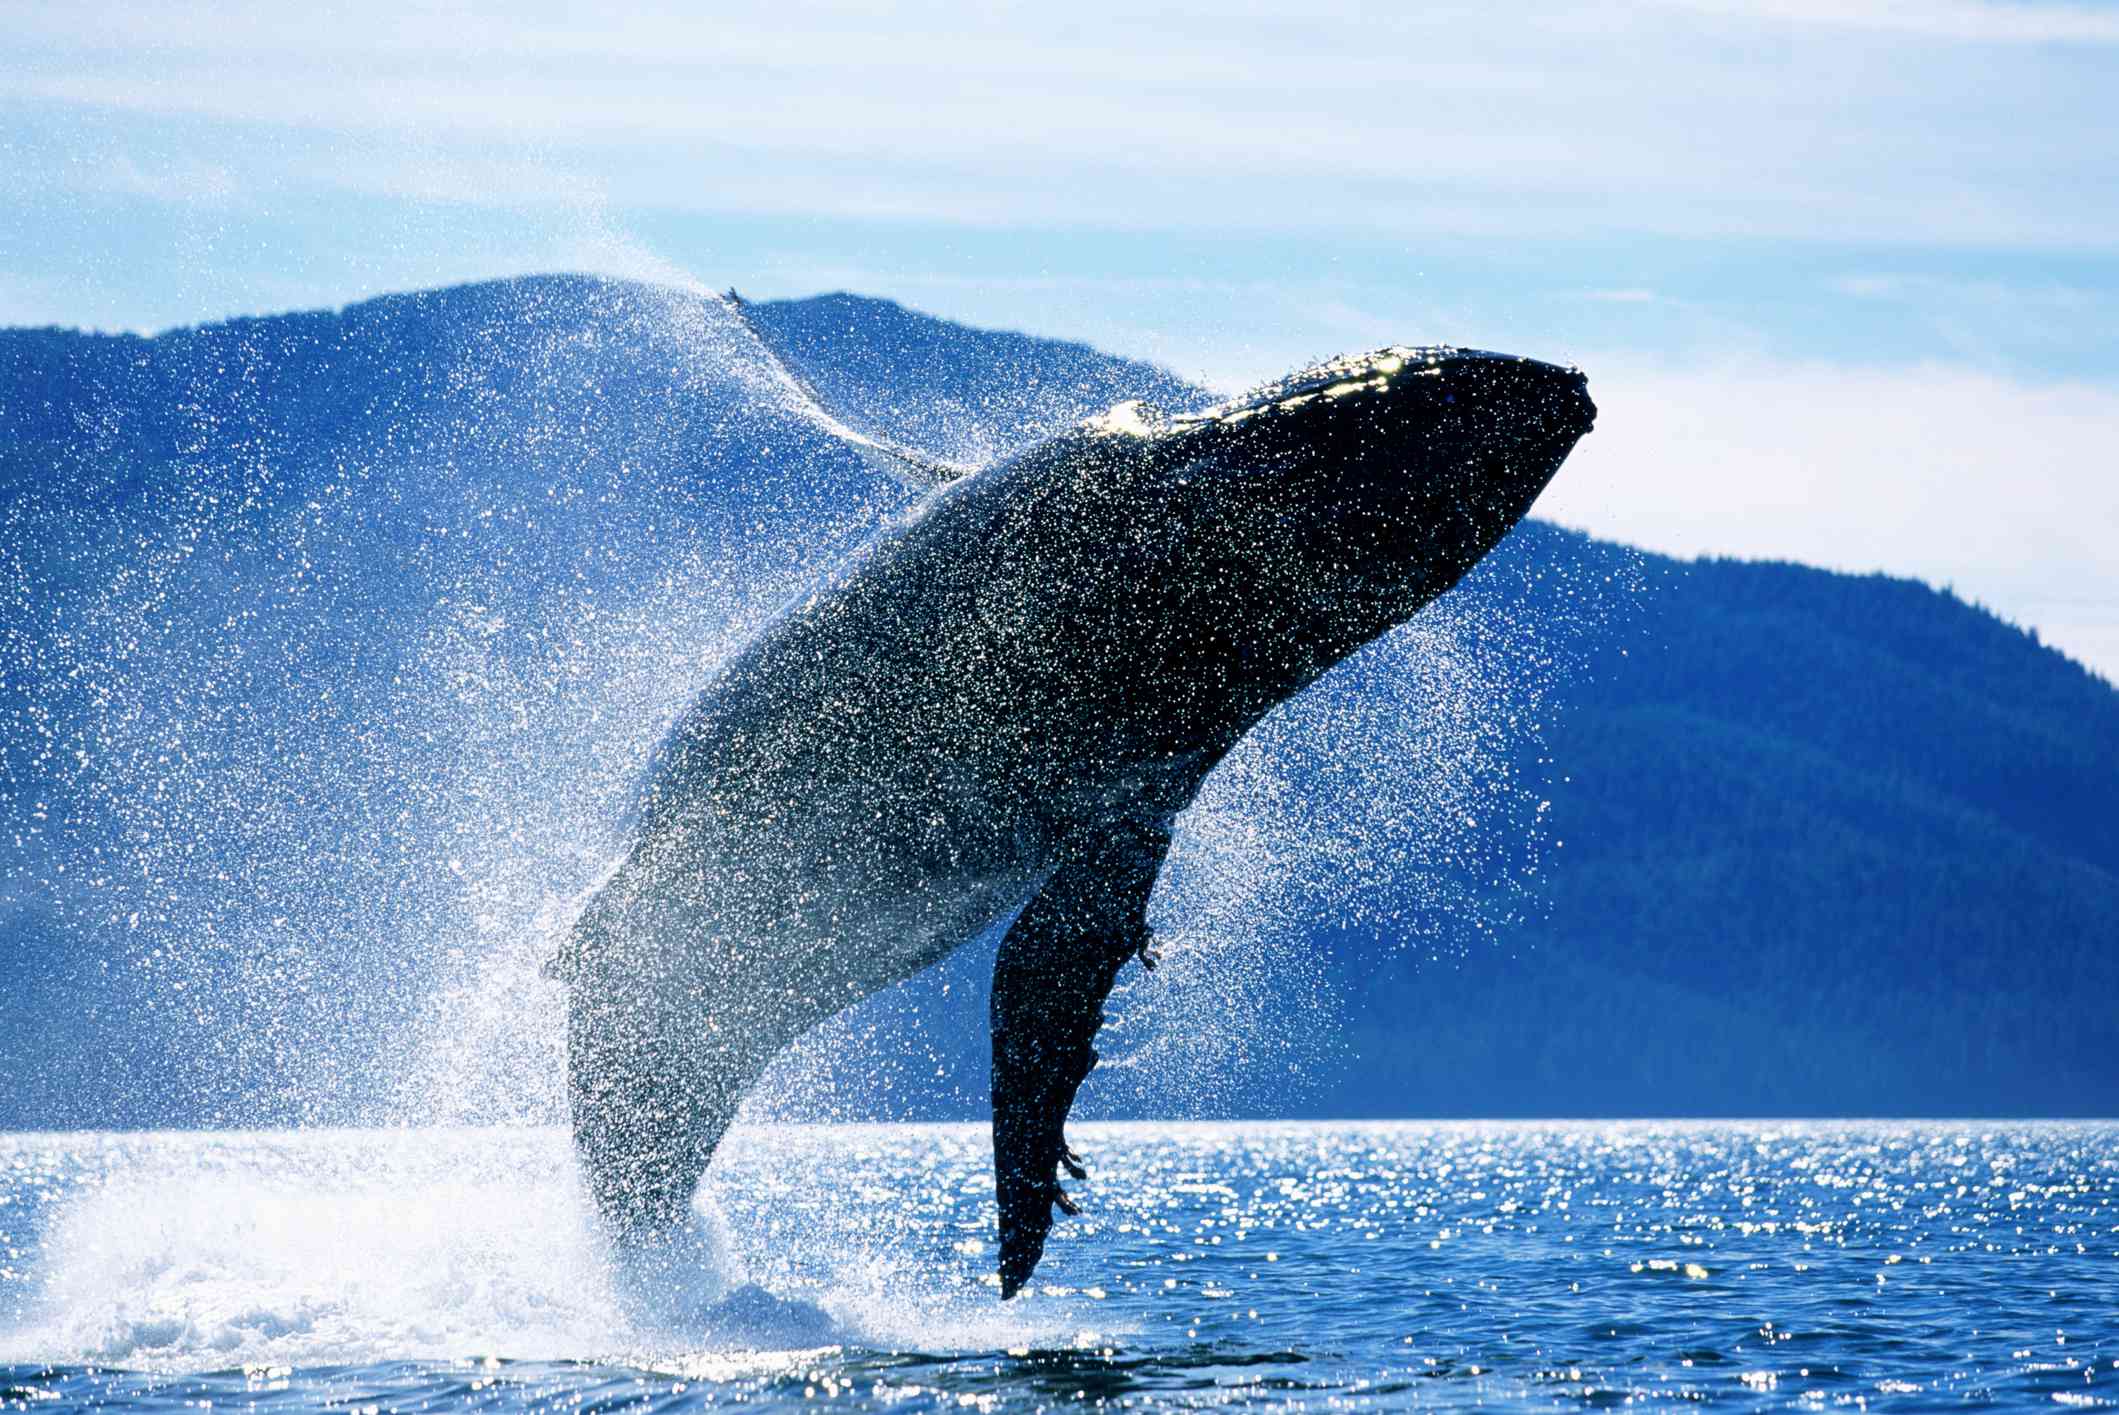 humpback whale breaching in Alaska